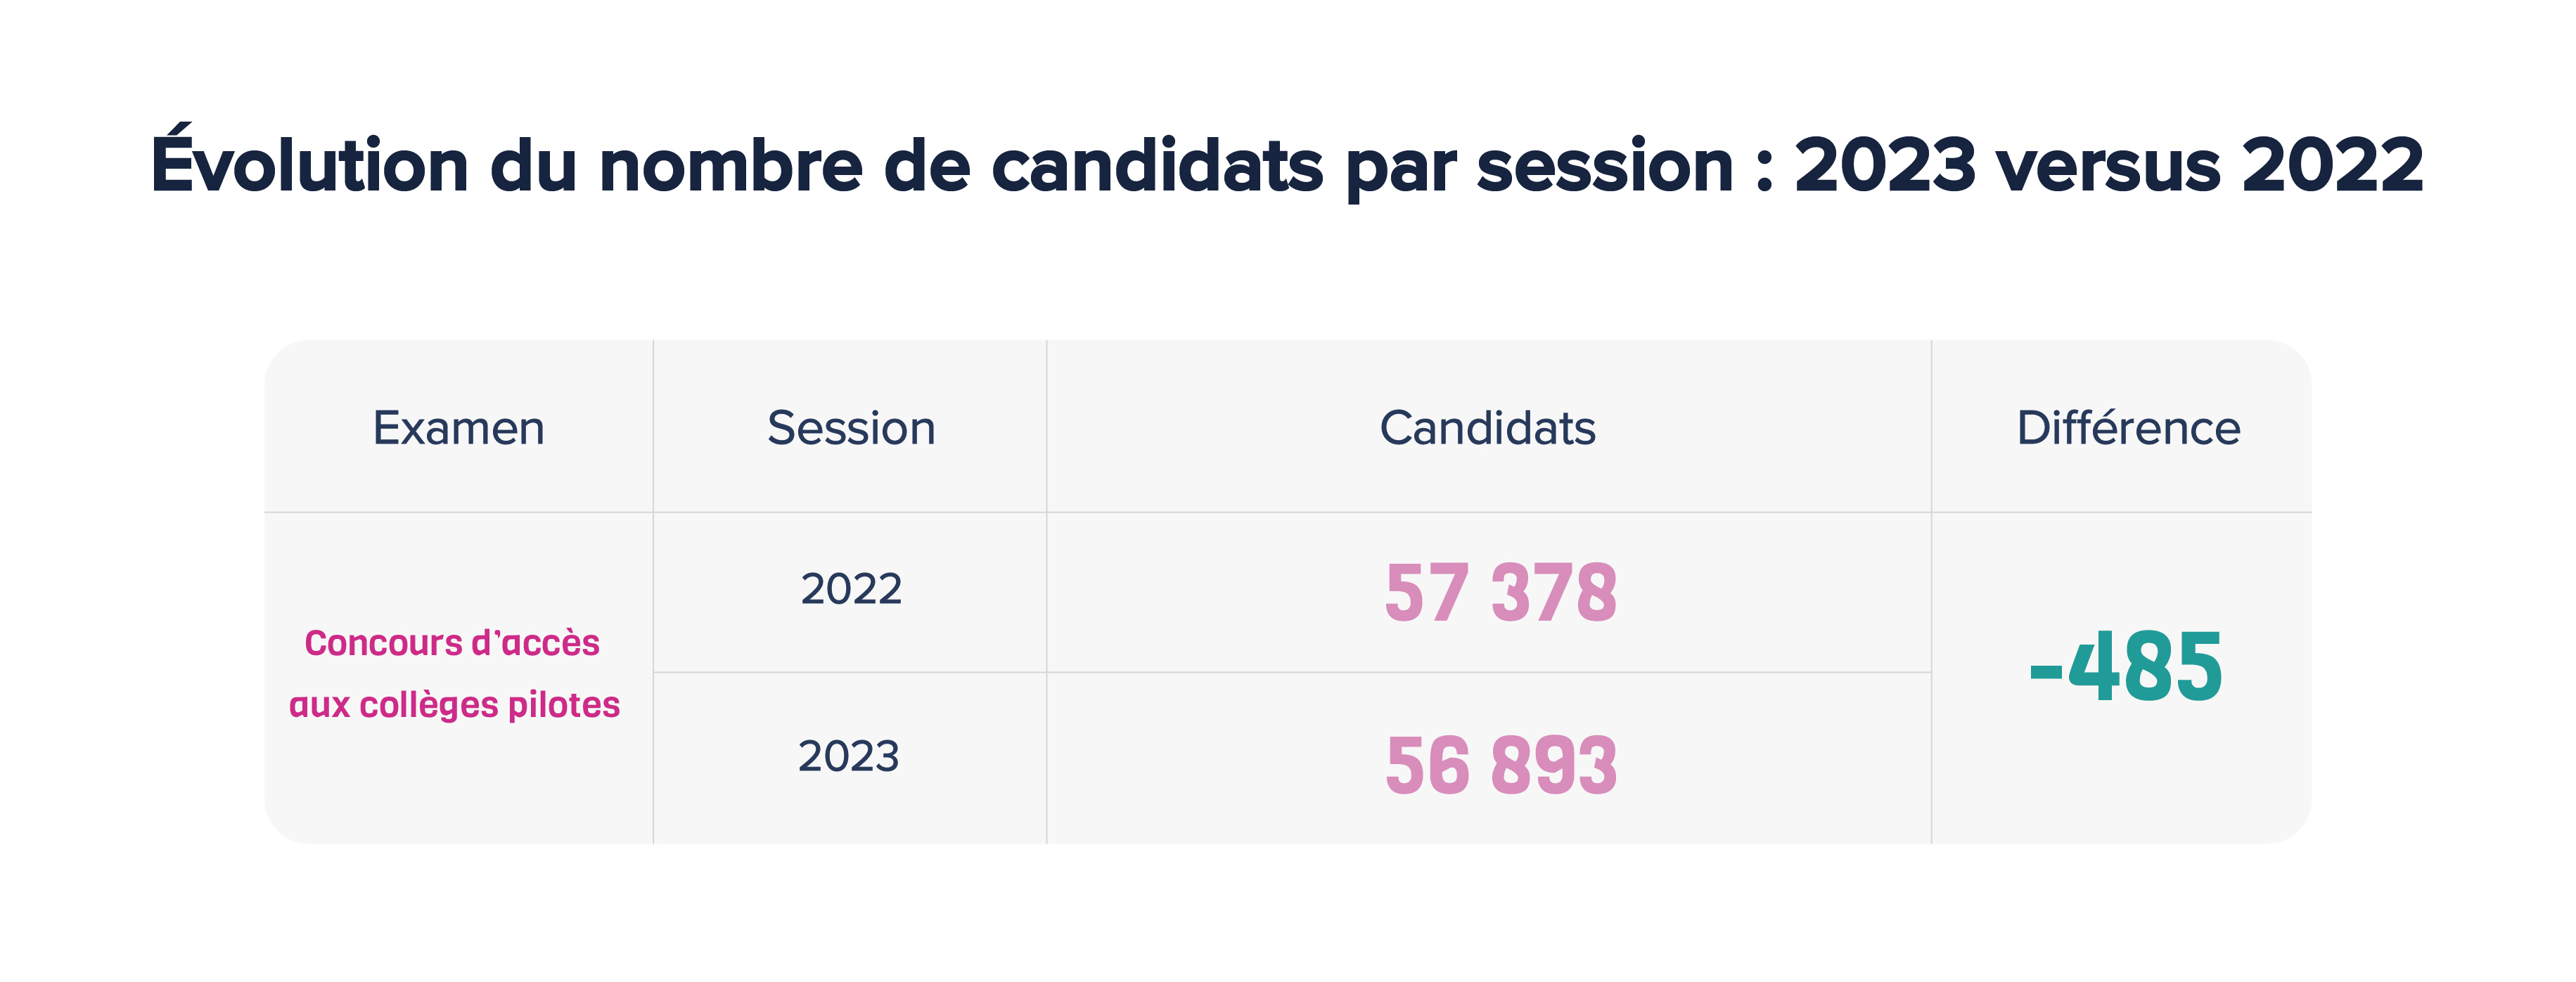 Evolution du nombre de candidats par session : 2023 versus 2022